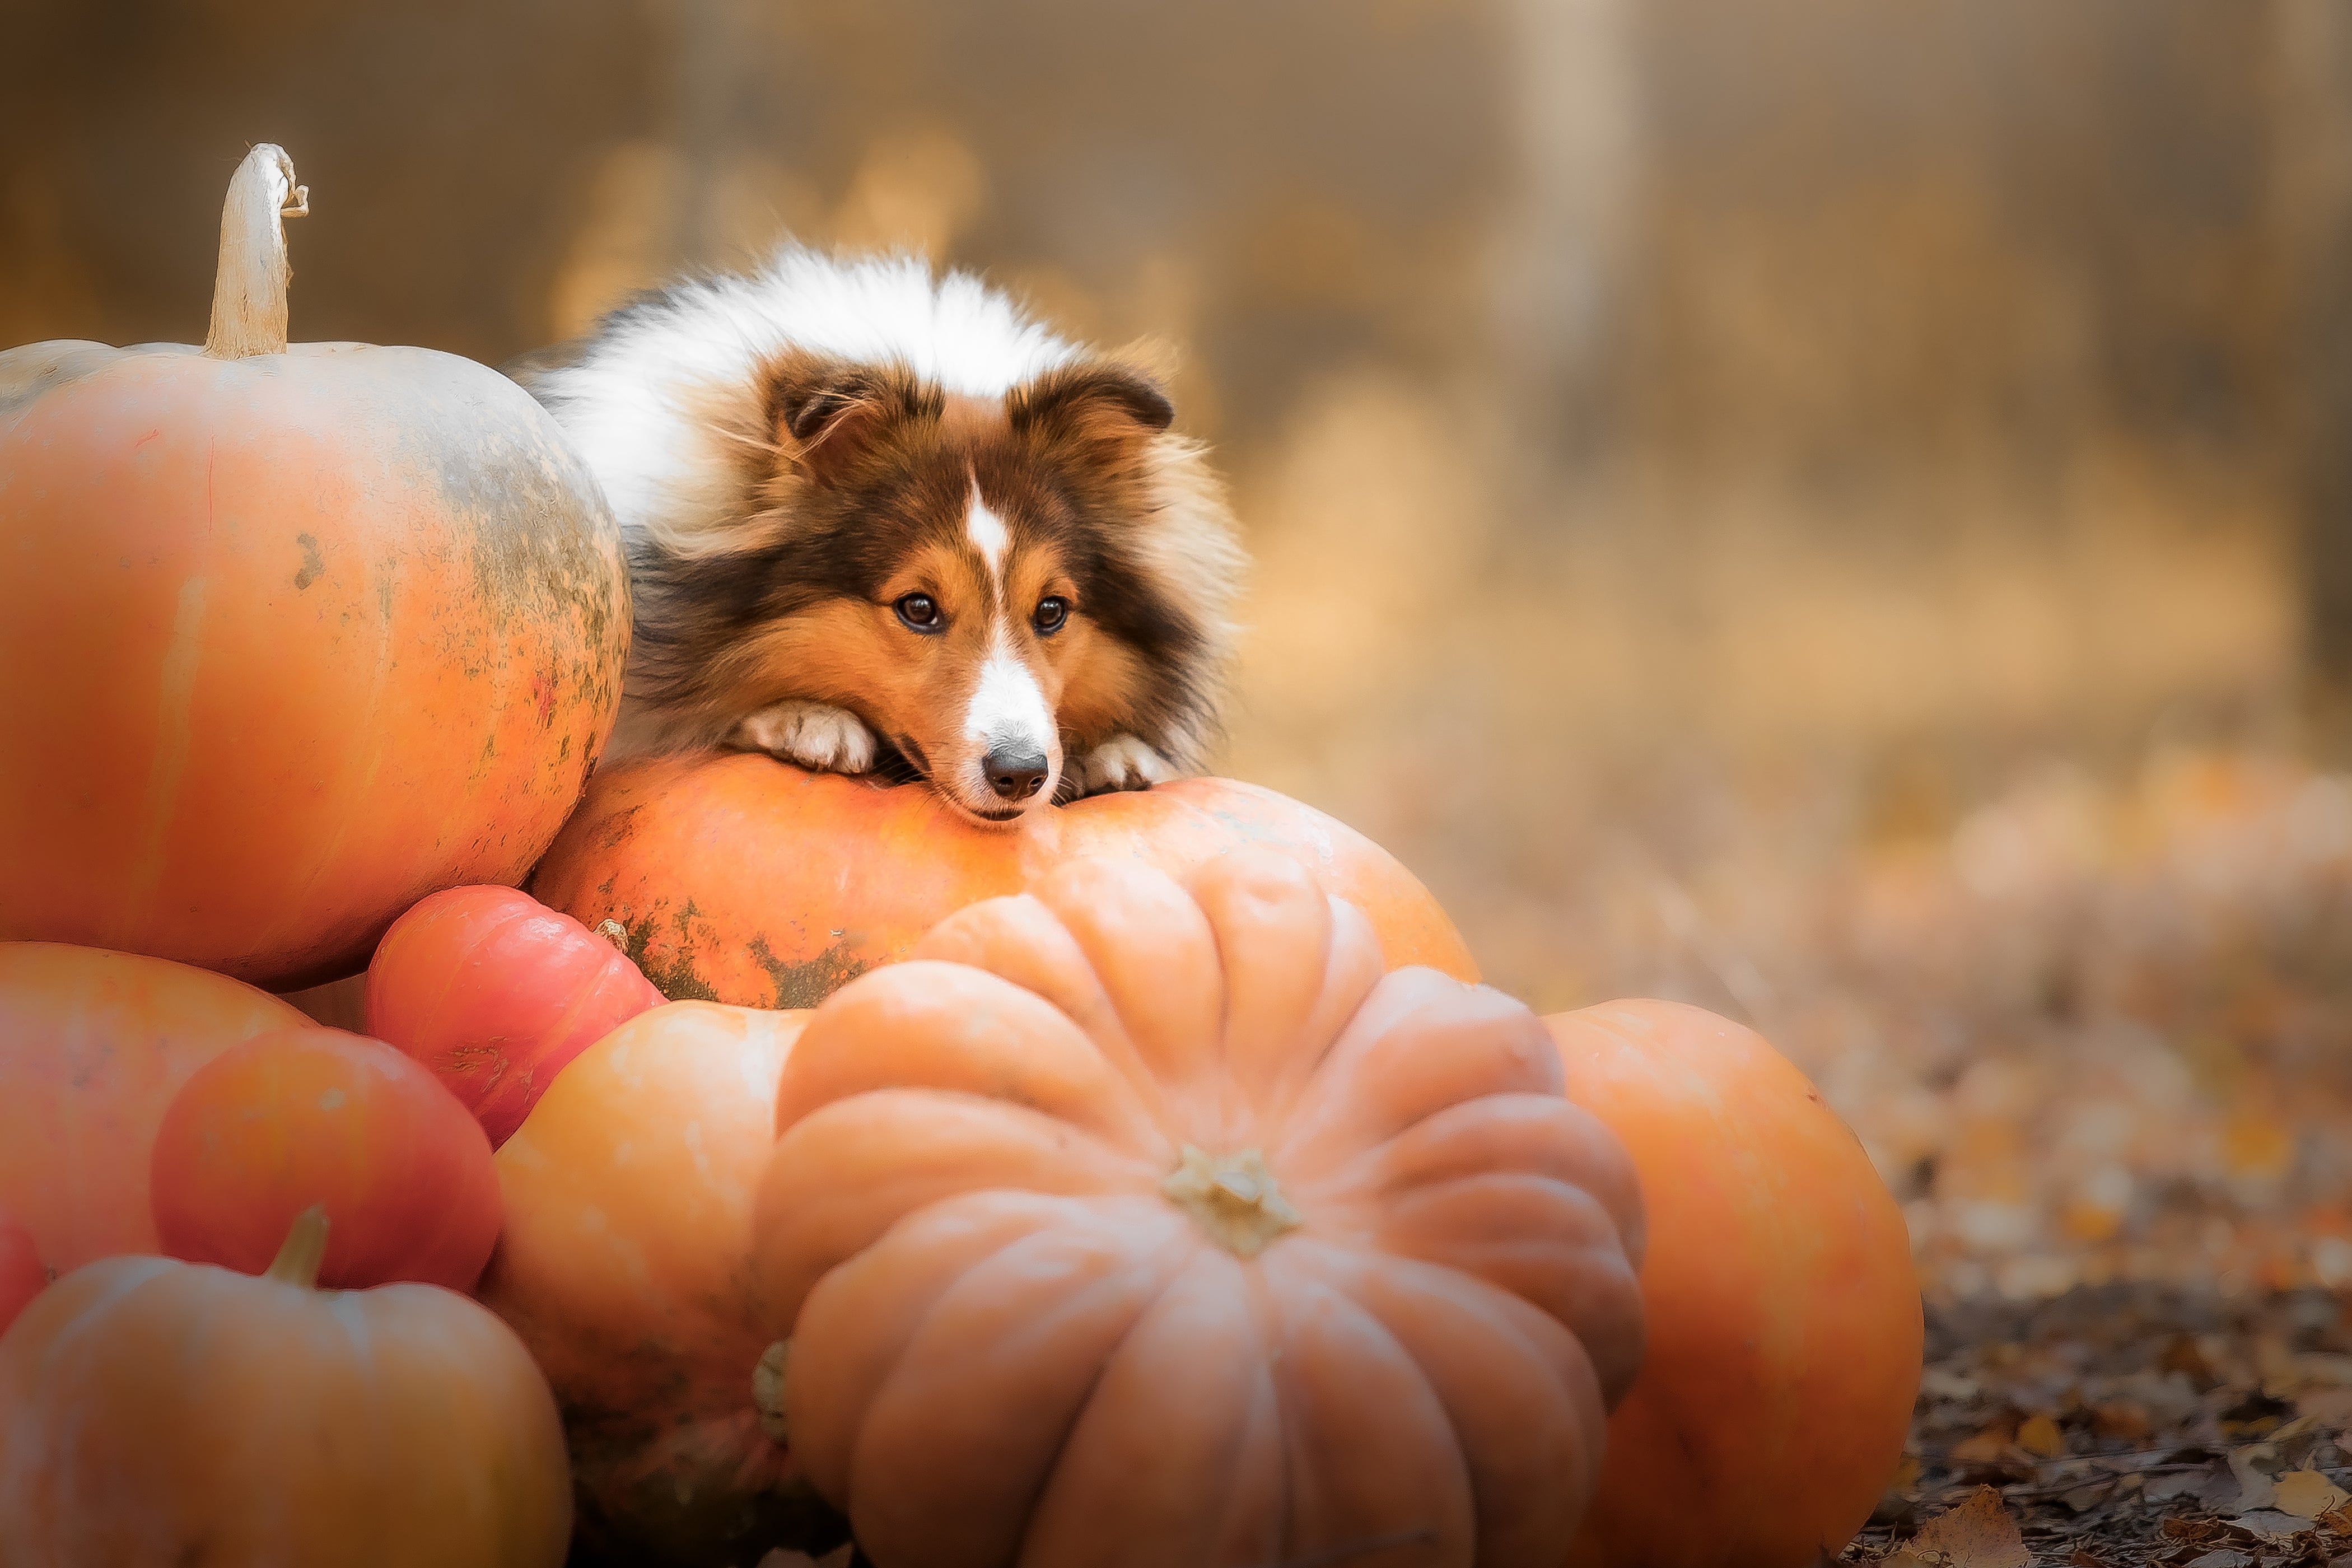 Cute dog in a pumpkin patch